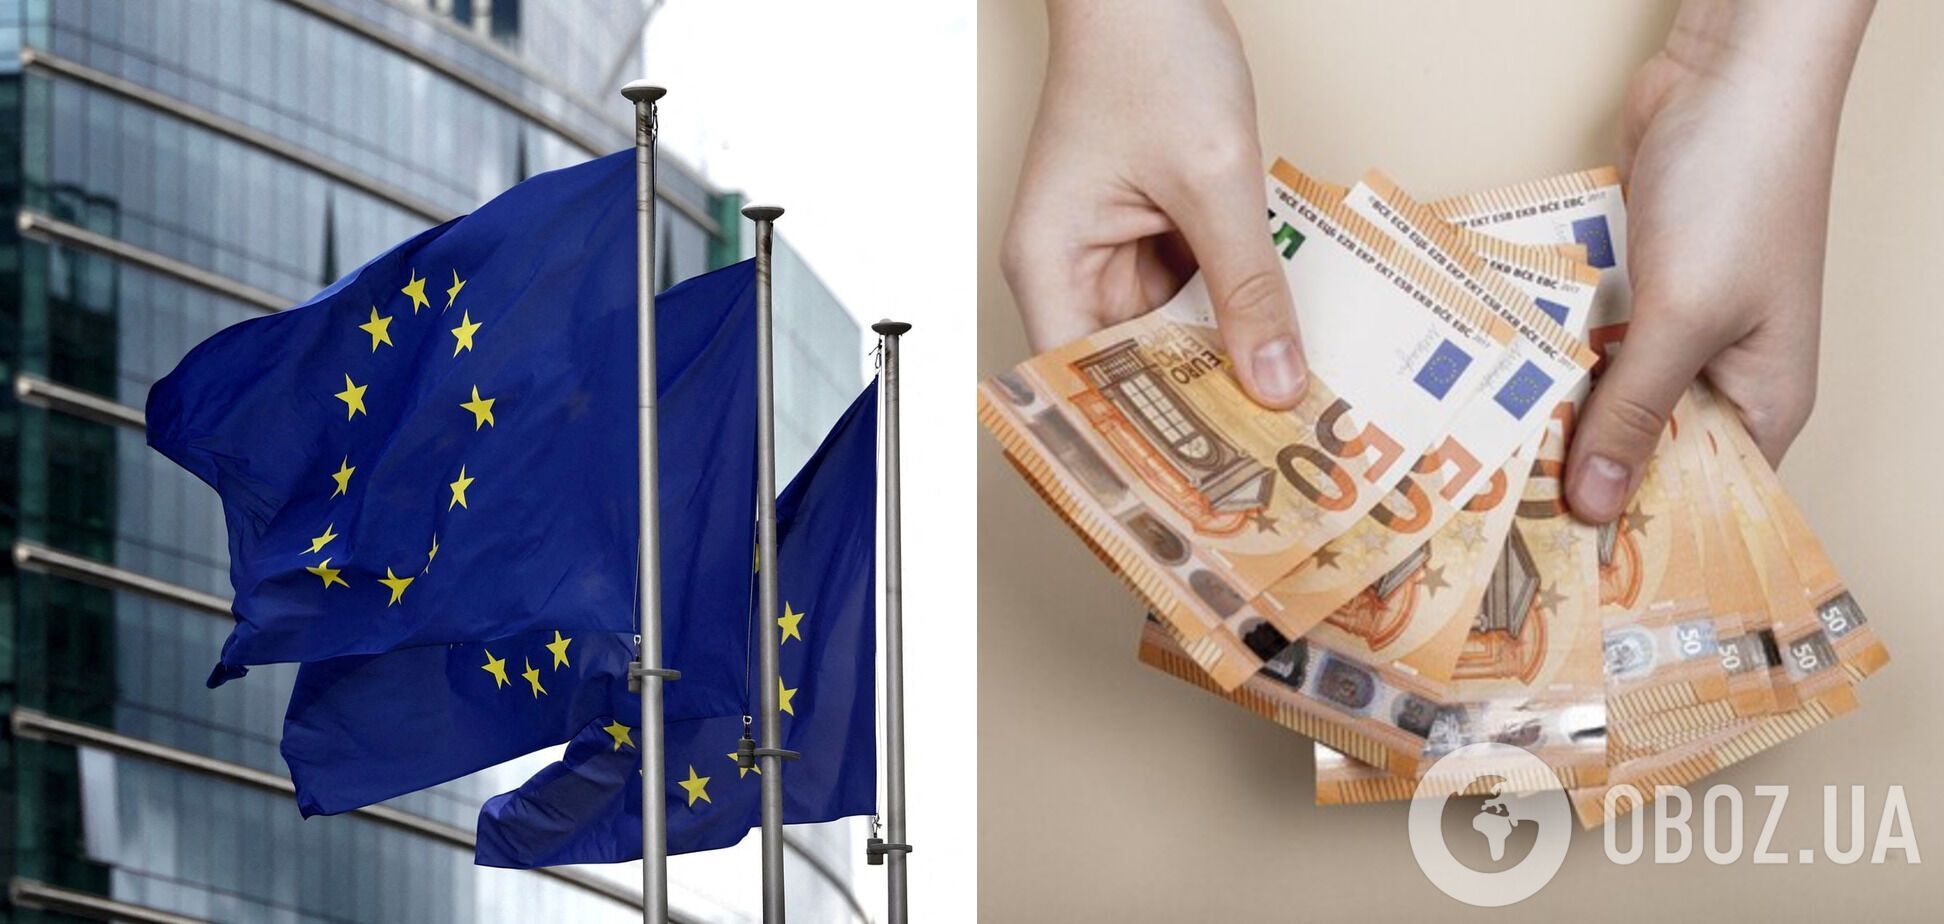 Европарламент и Совет ЕС предварительно договорились об Украинском фонде: когда начнут выплату €50 млрд